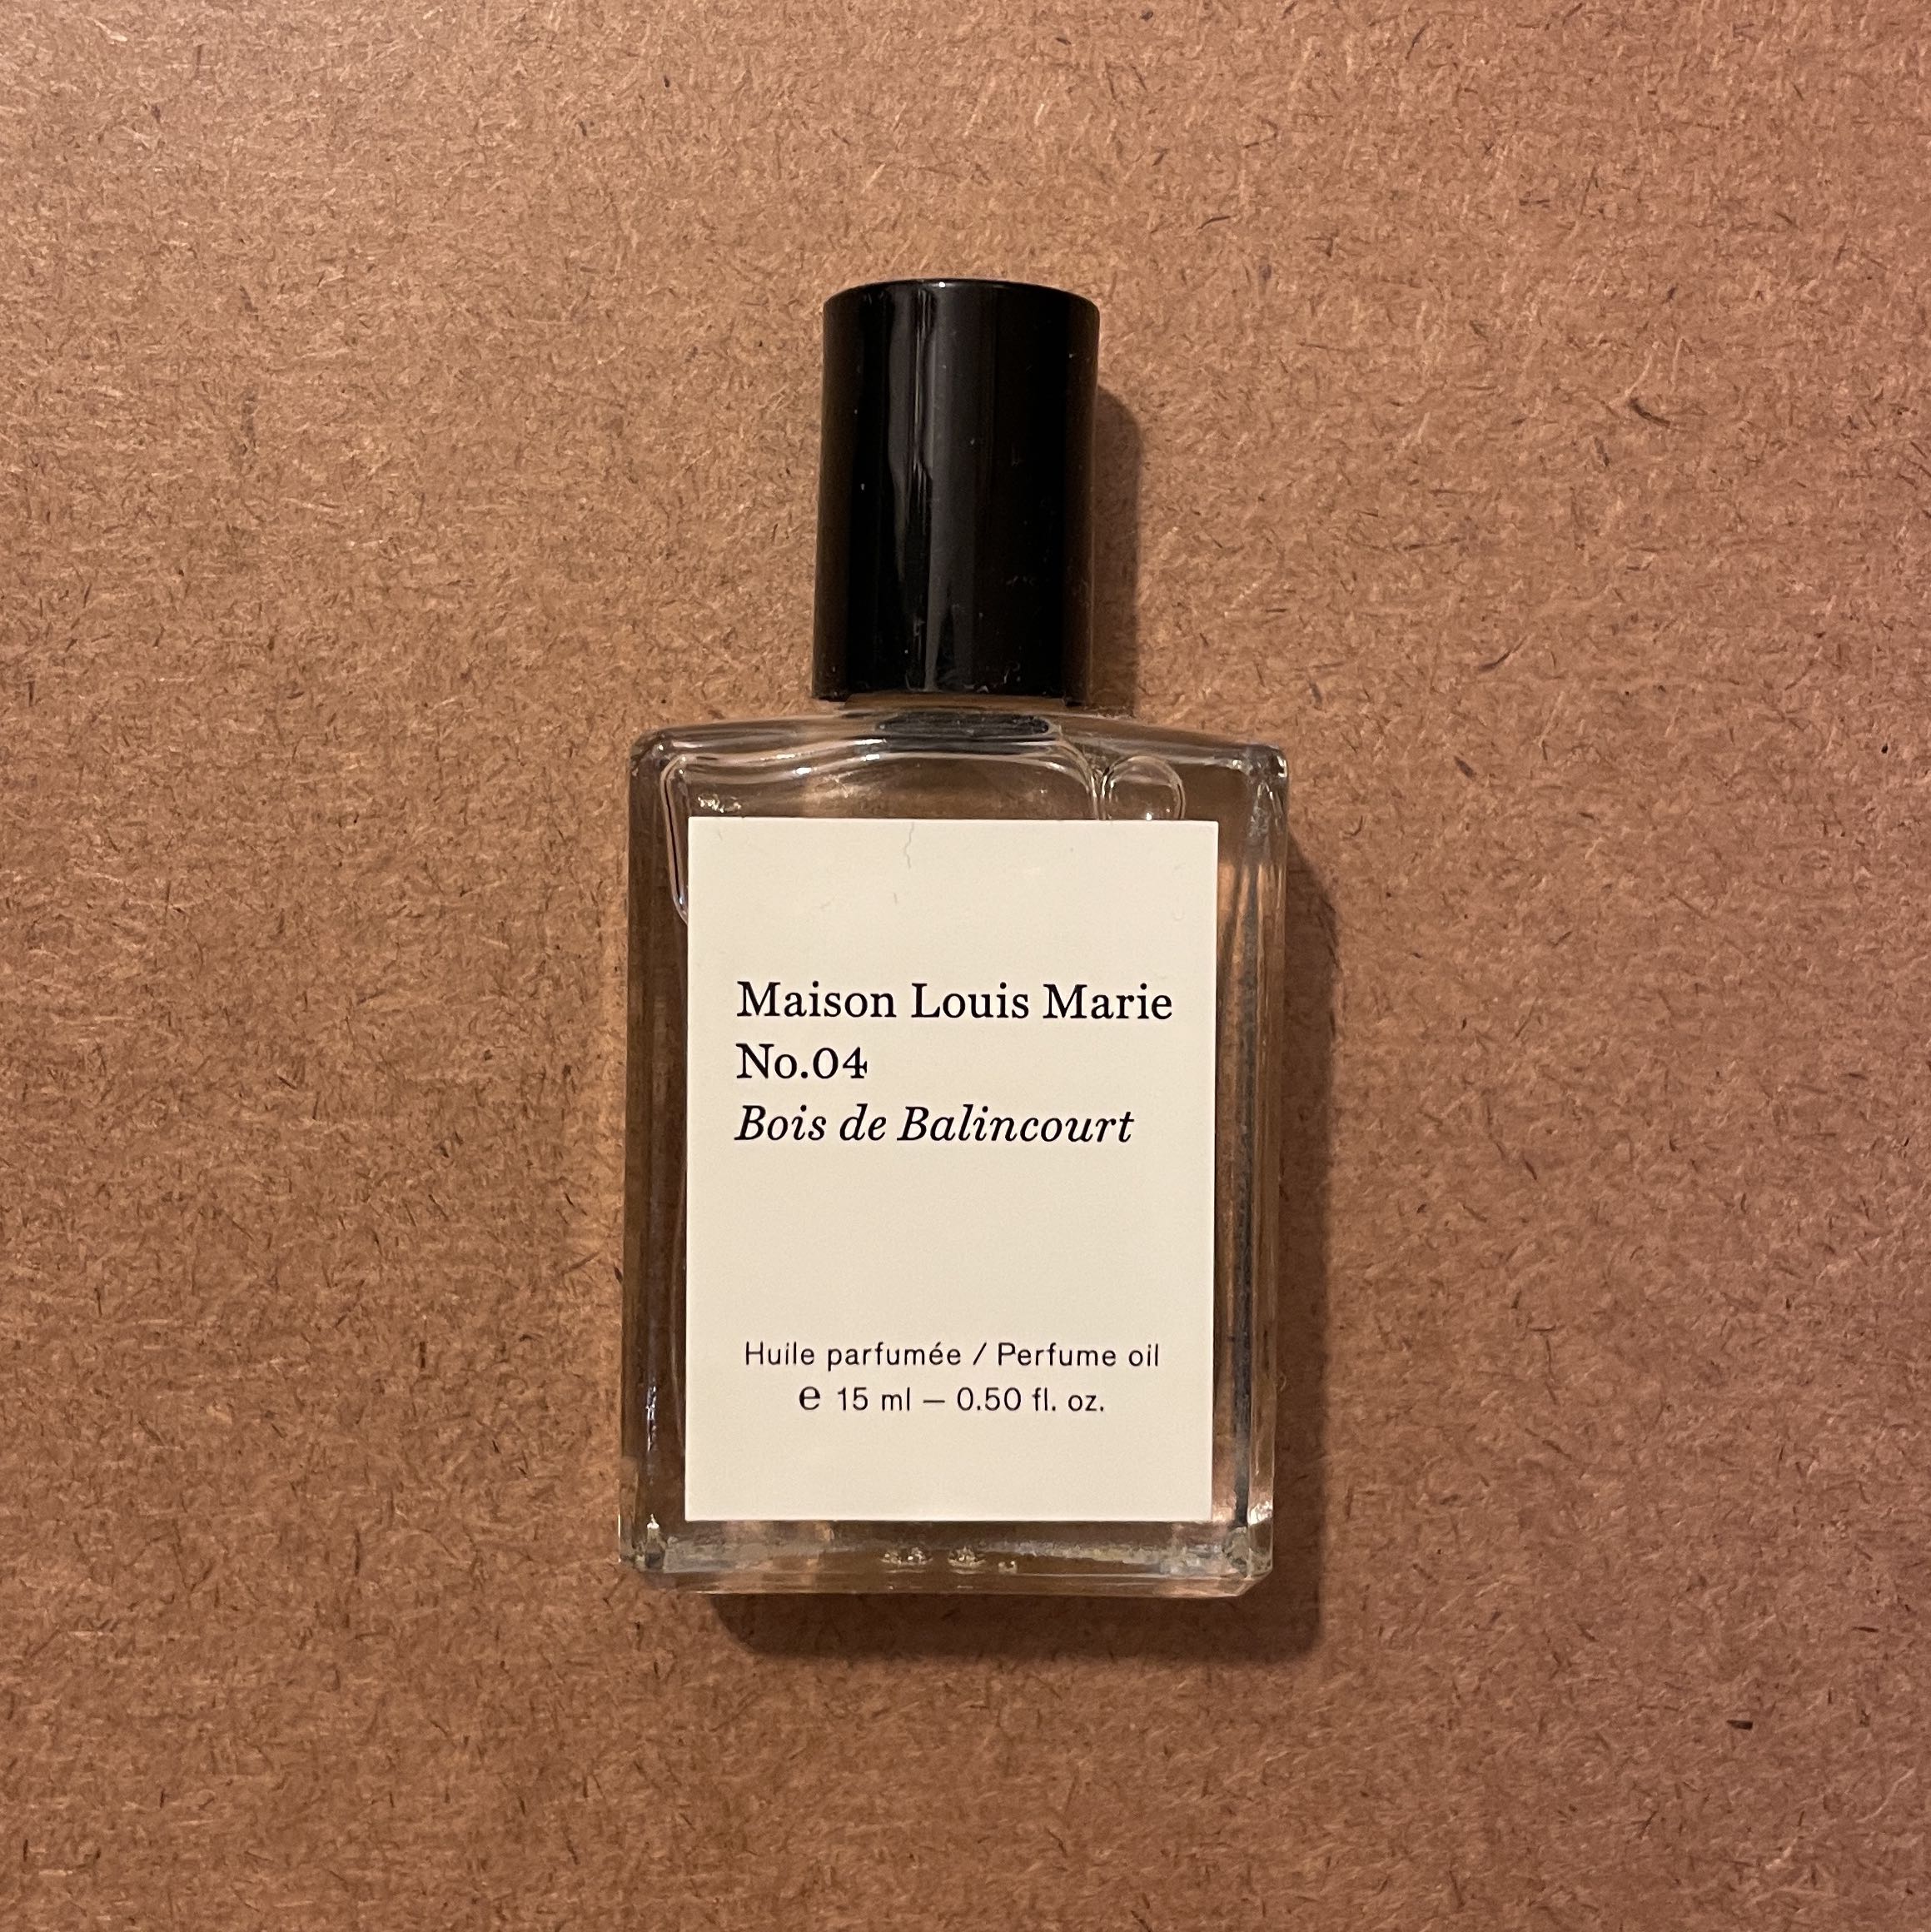 Maison Louis Marie No.04 Perfume Oil 香水油, 美容＆化妝品, 健康及